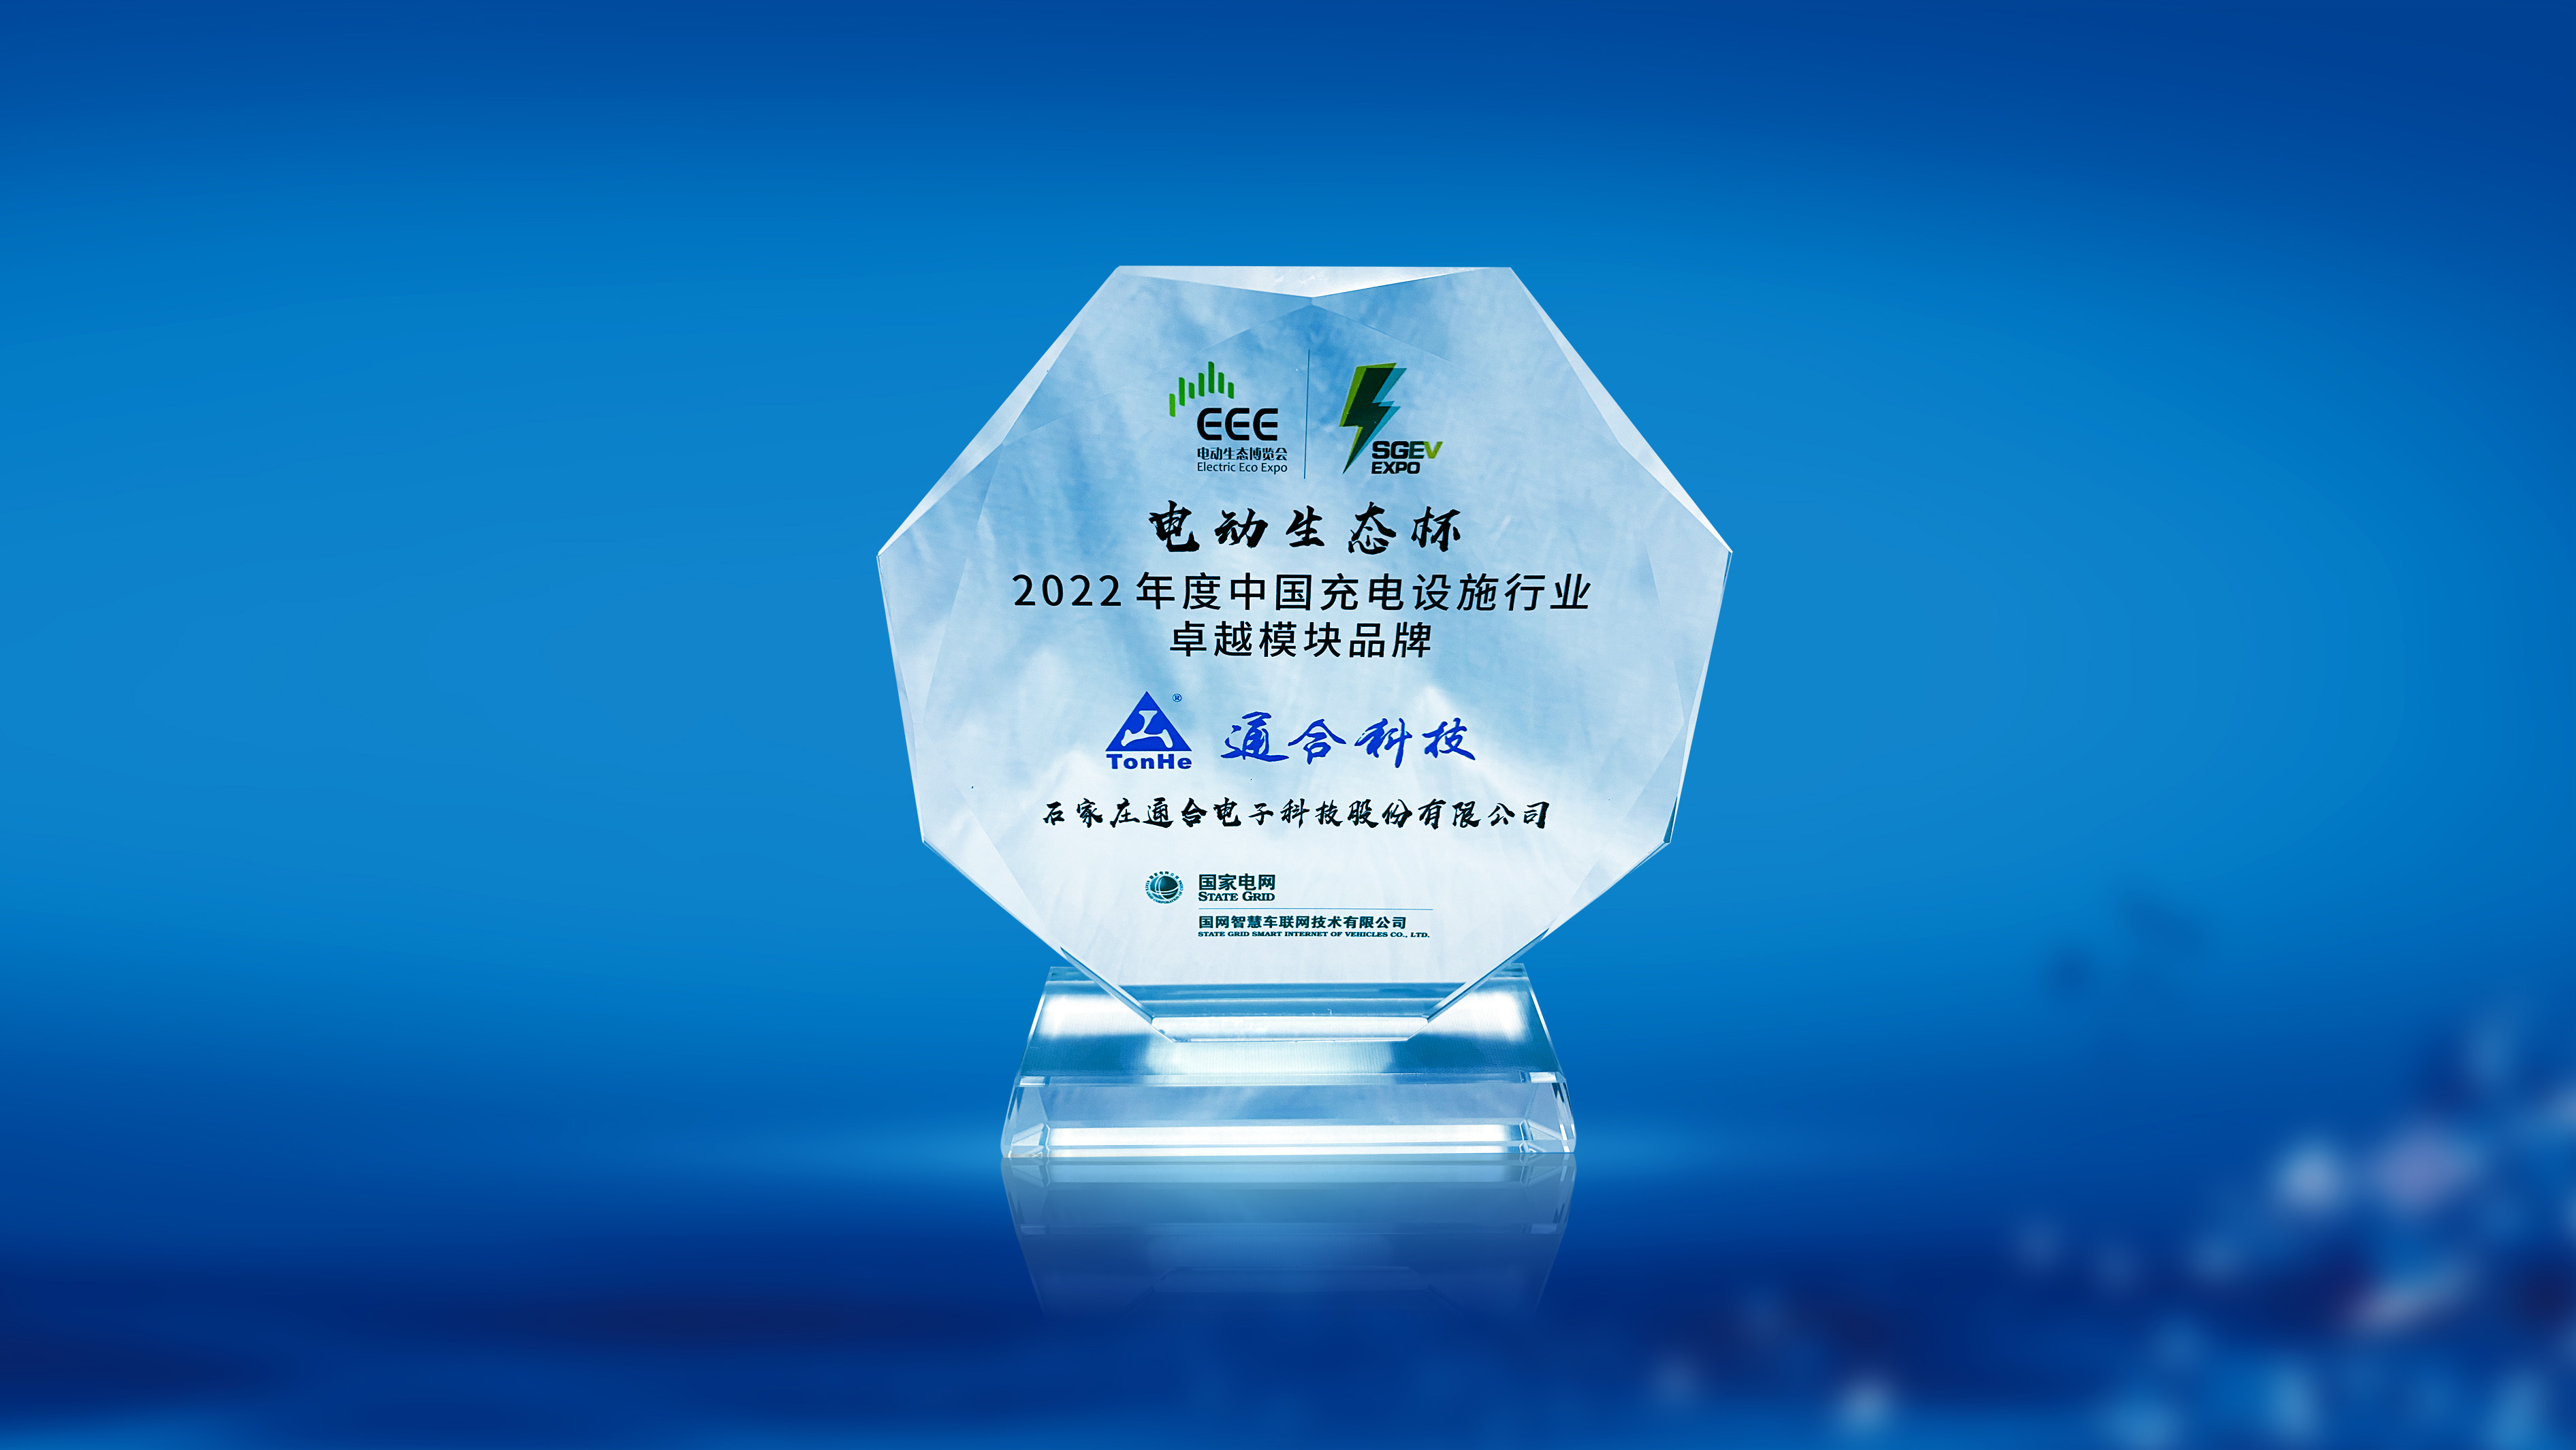 通合科技榮膺2022年度中國充電設施行業卓越模塊品牌獎